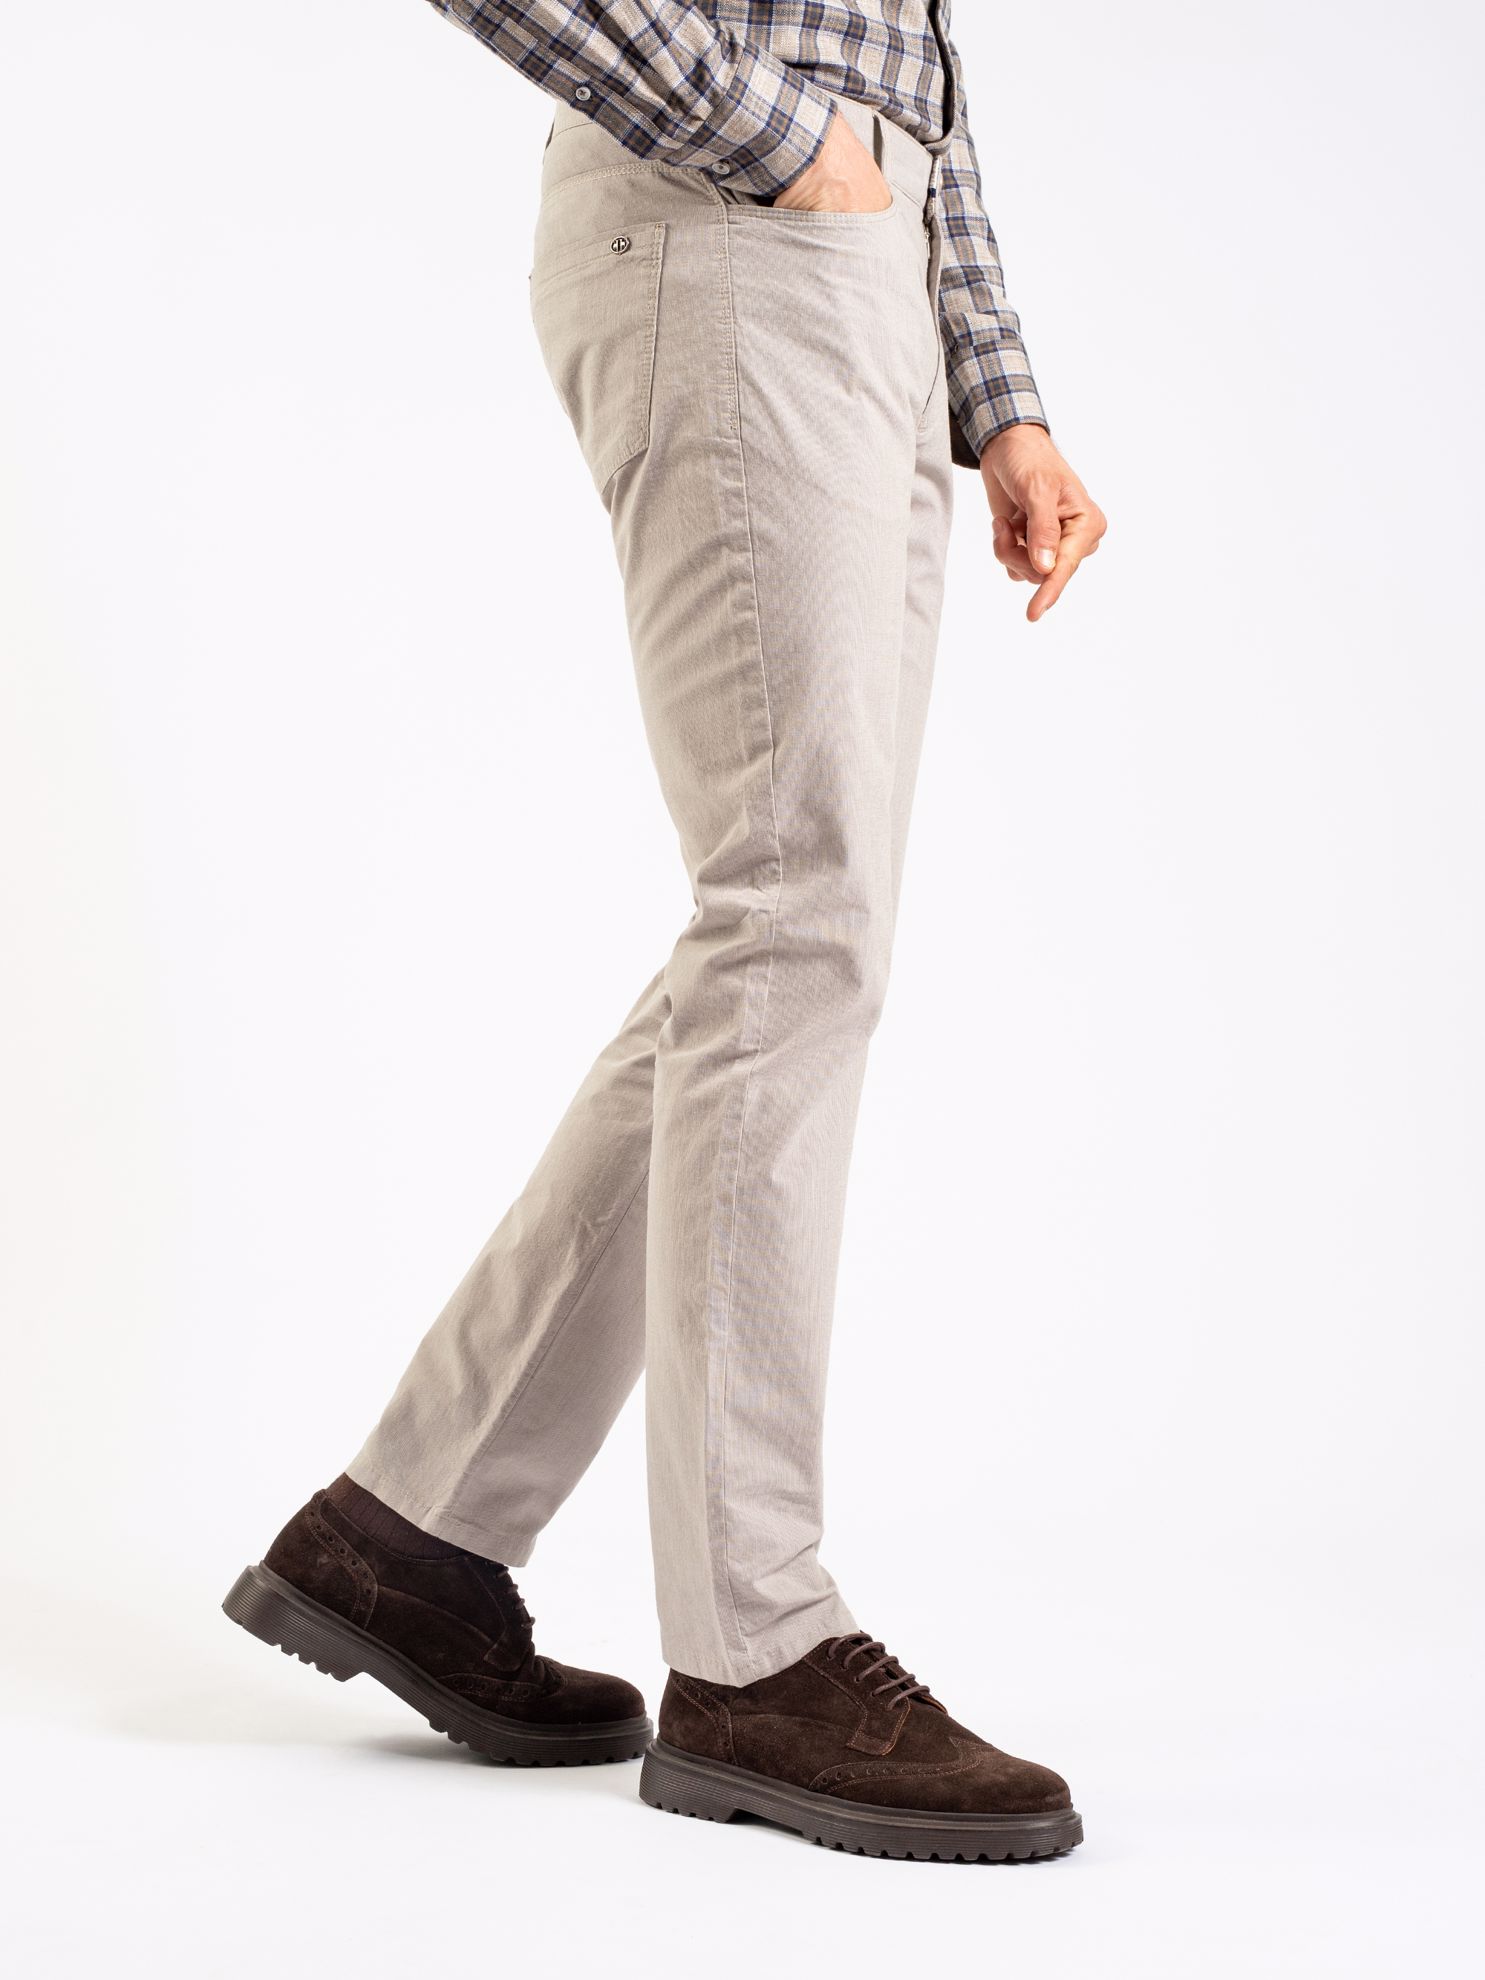 Karaca Erkek 6 Drop Pantolon-Bej. ürün görseli